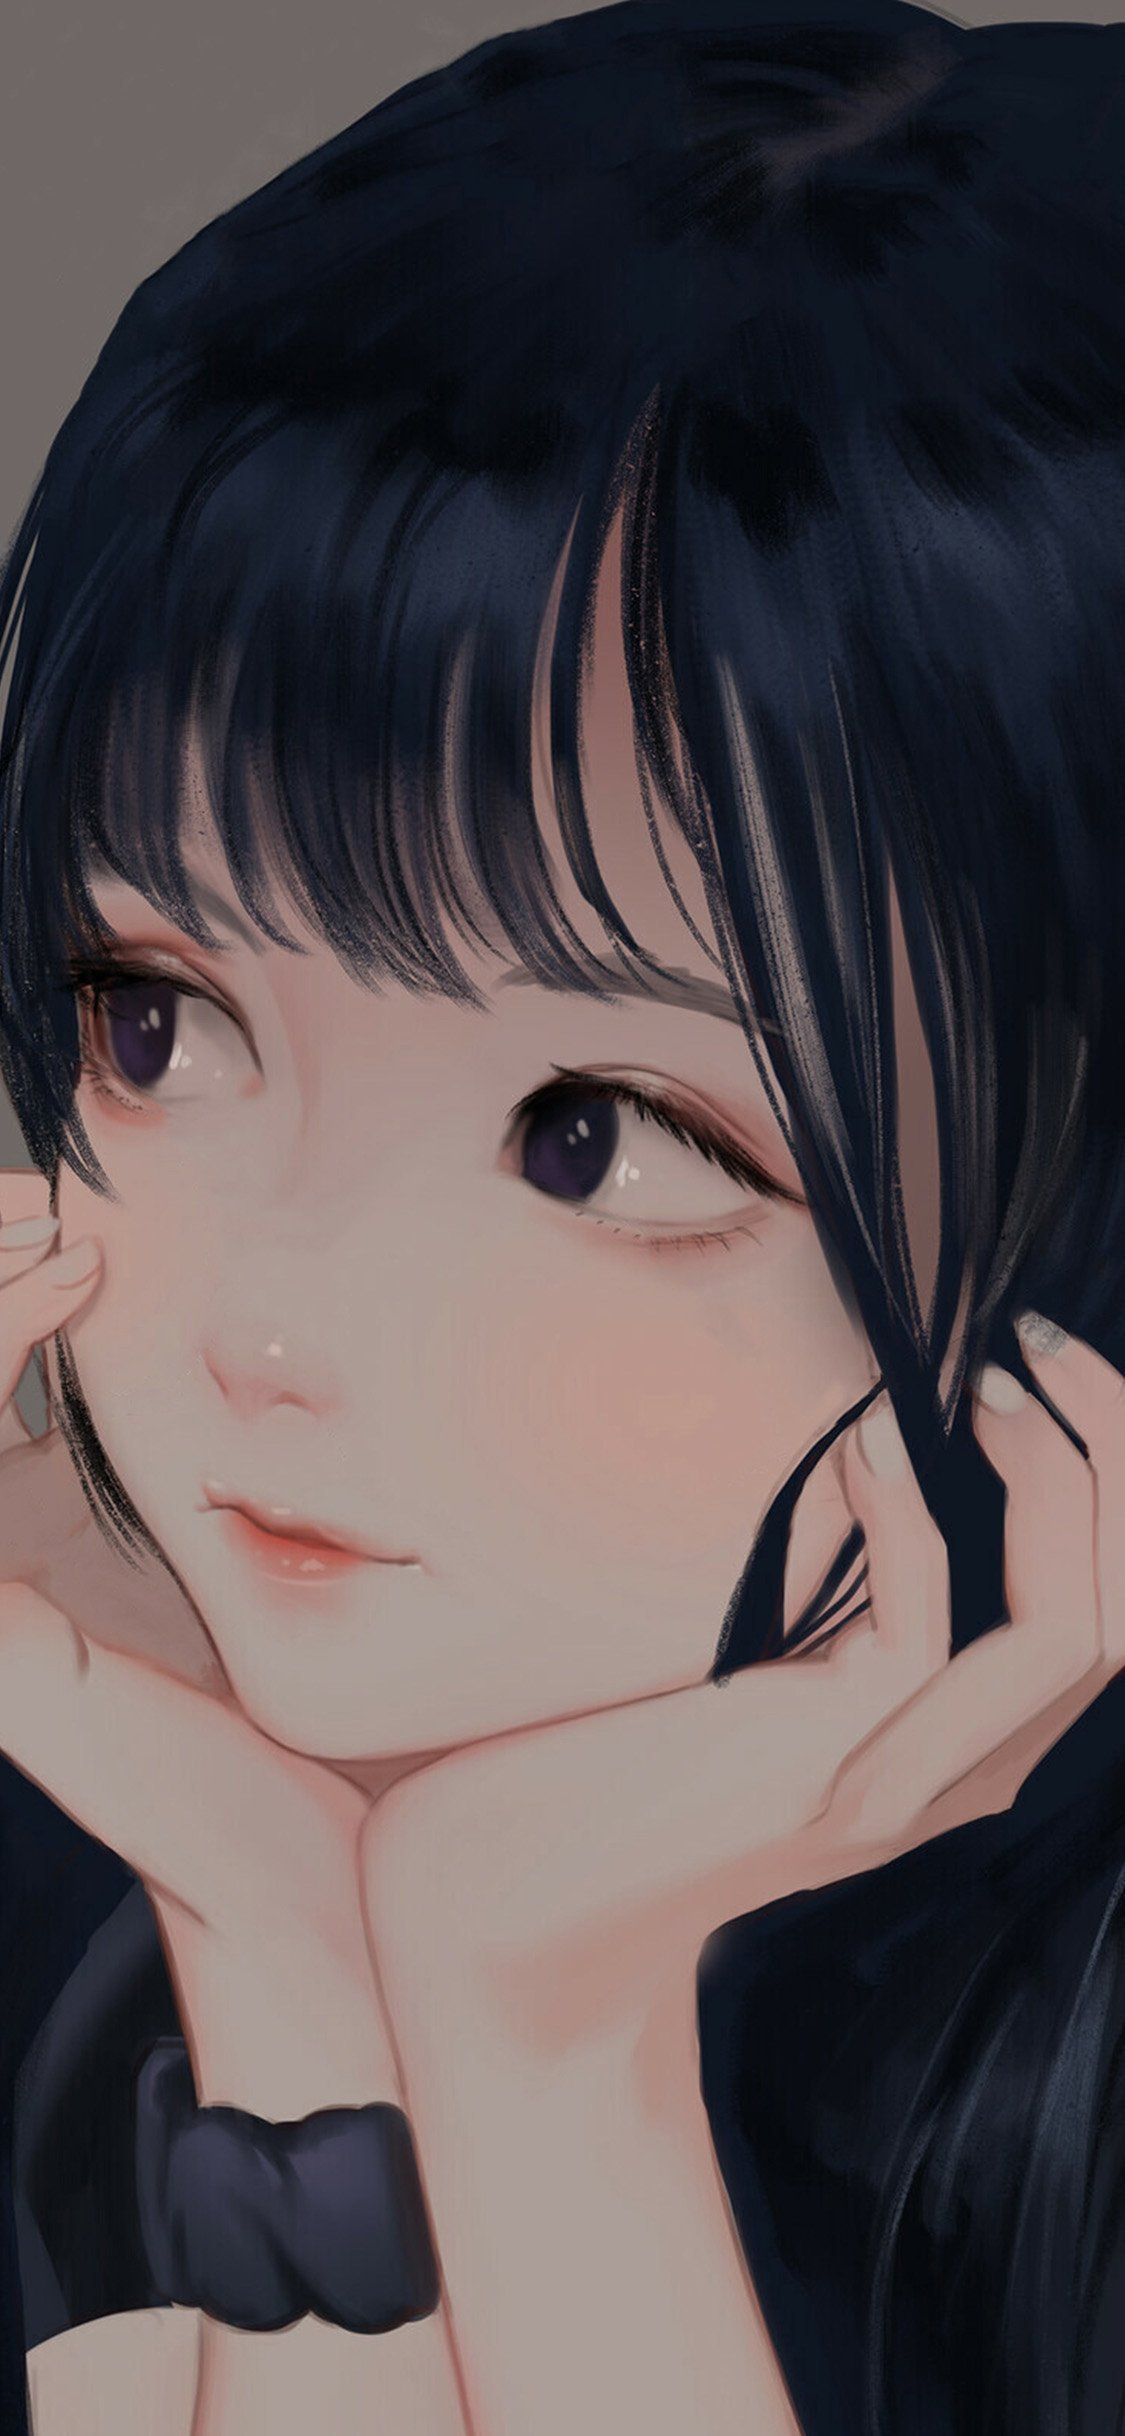 Aesthetic anime girl Wallpaper Download